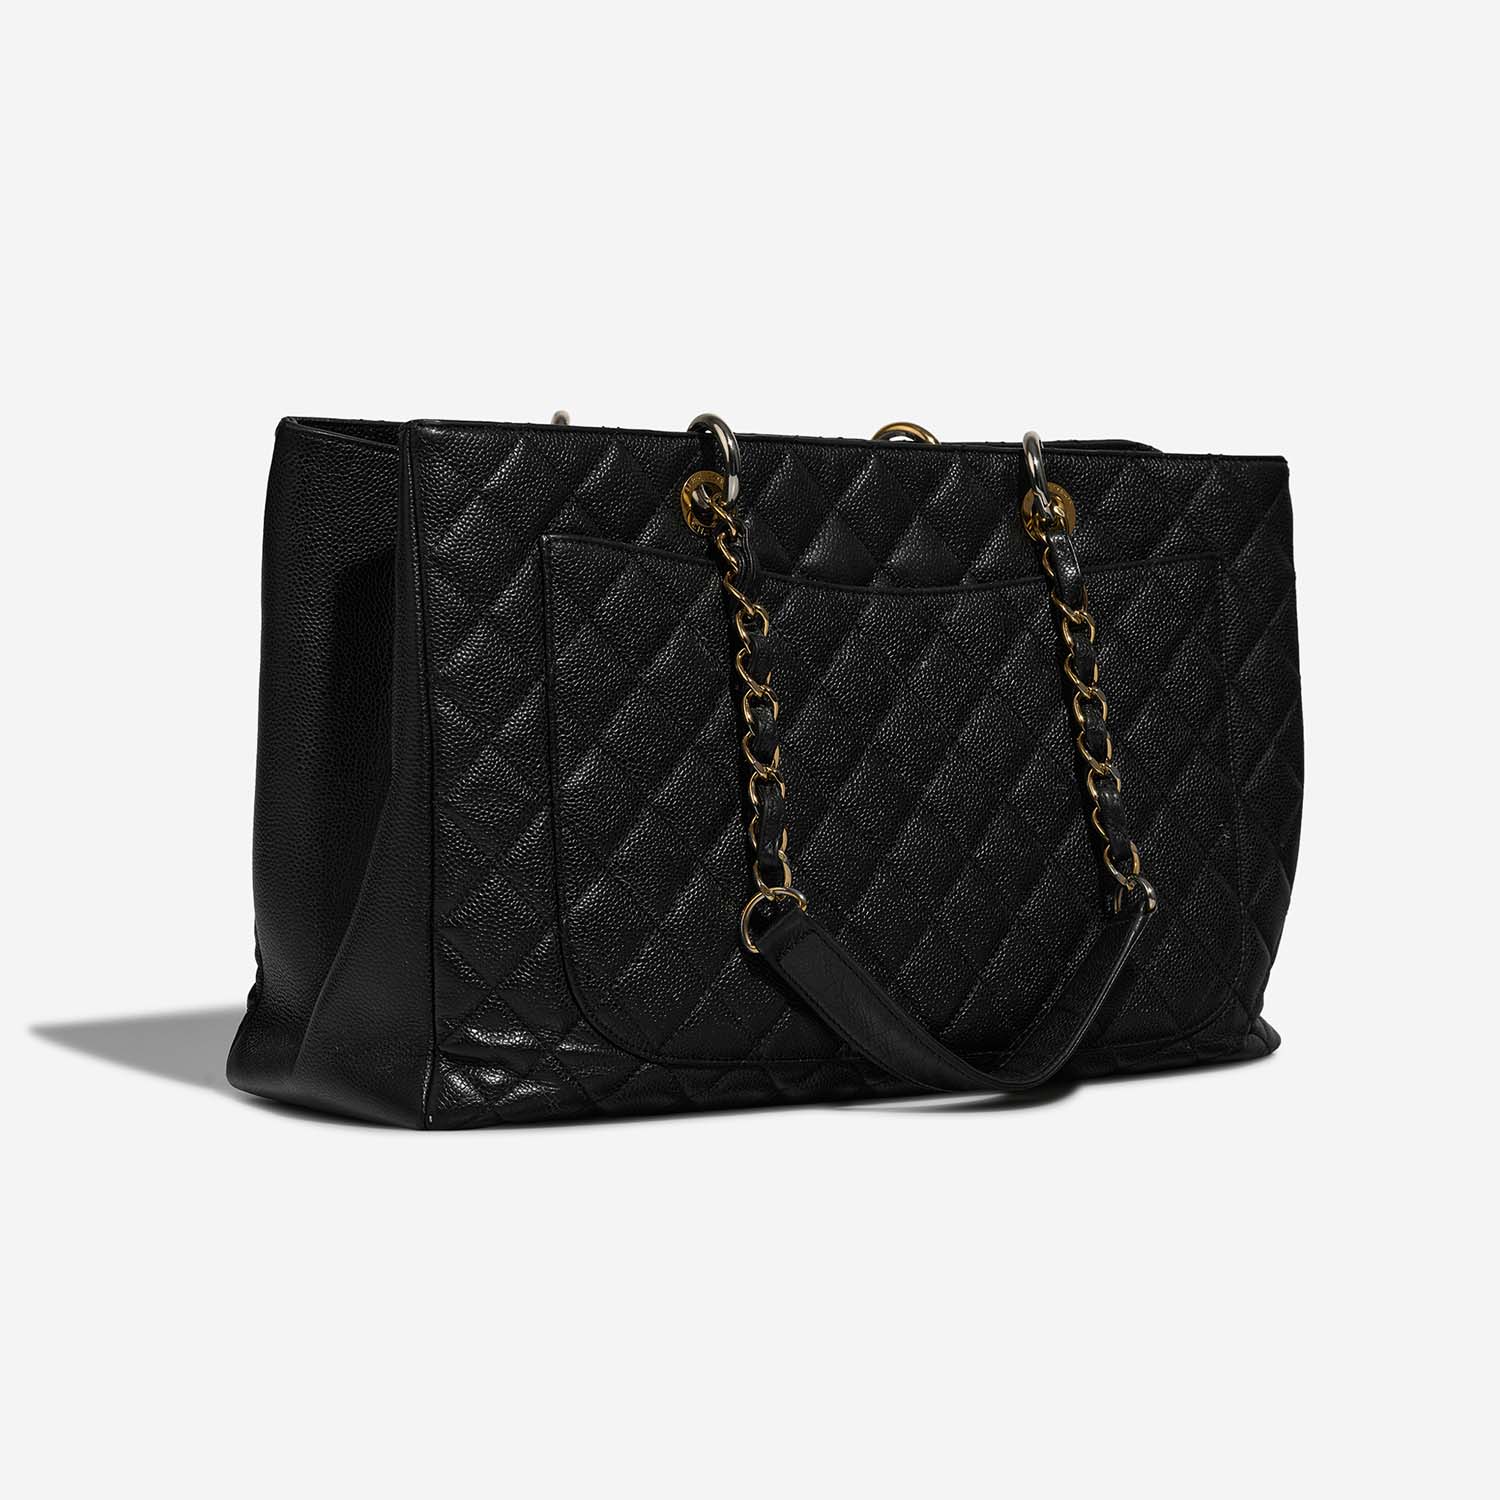 Chanel GST Black Side Back | Sell your designer bag on Saclab.com